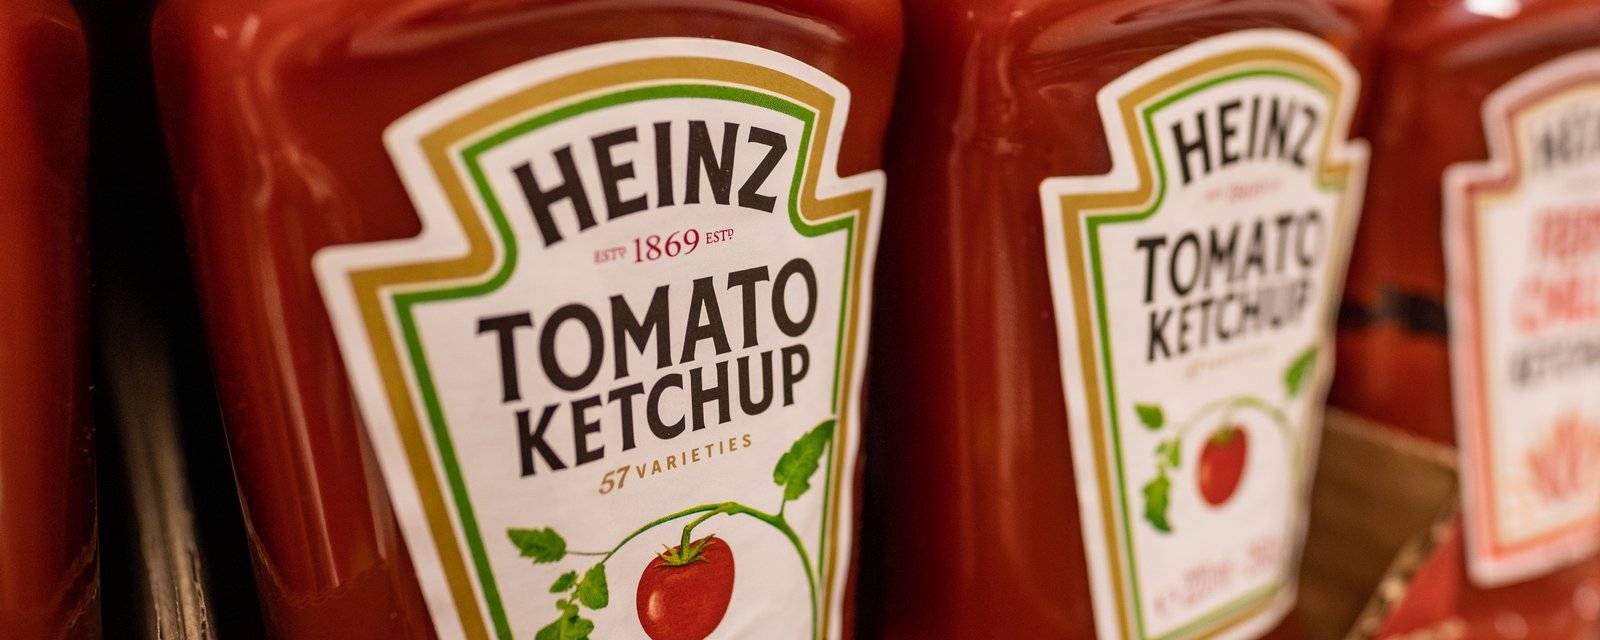 Heinz annonce une nouvelle saveur de ketchup et provoque de vives réactions